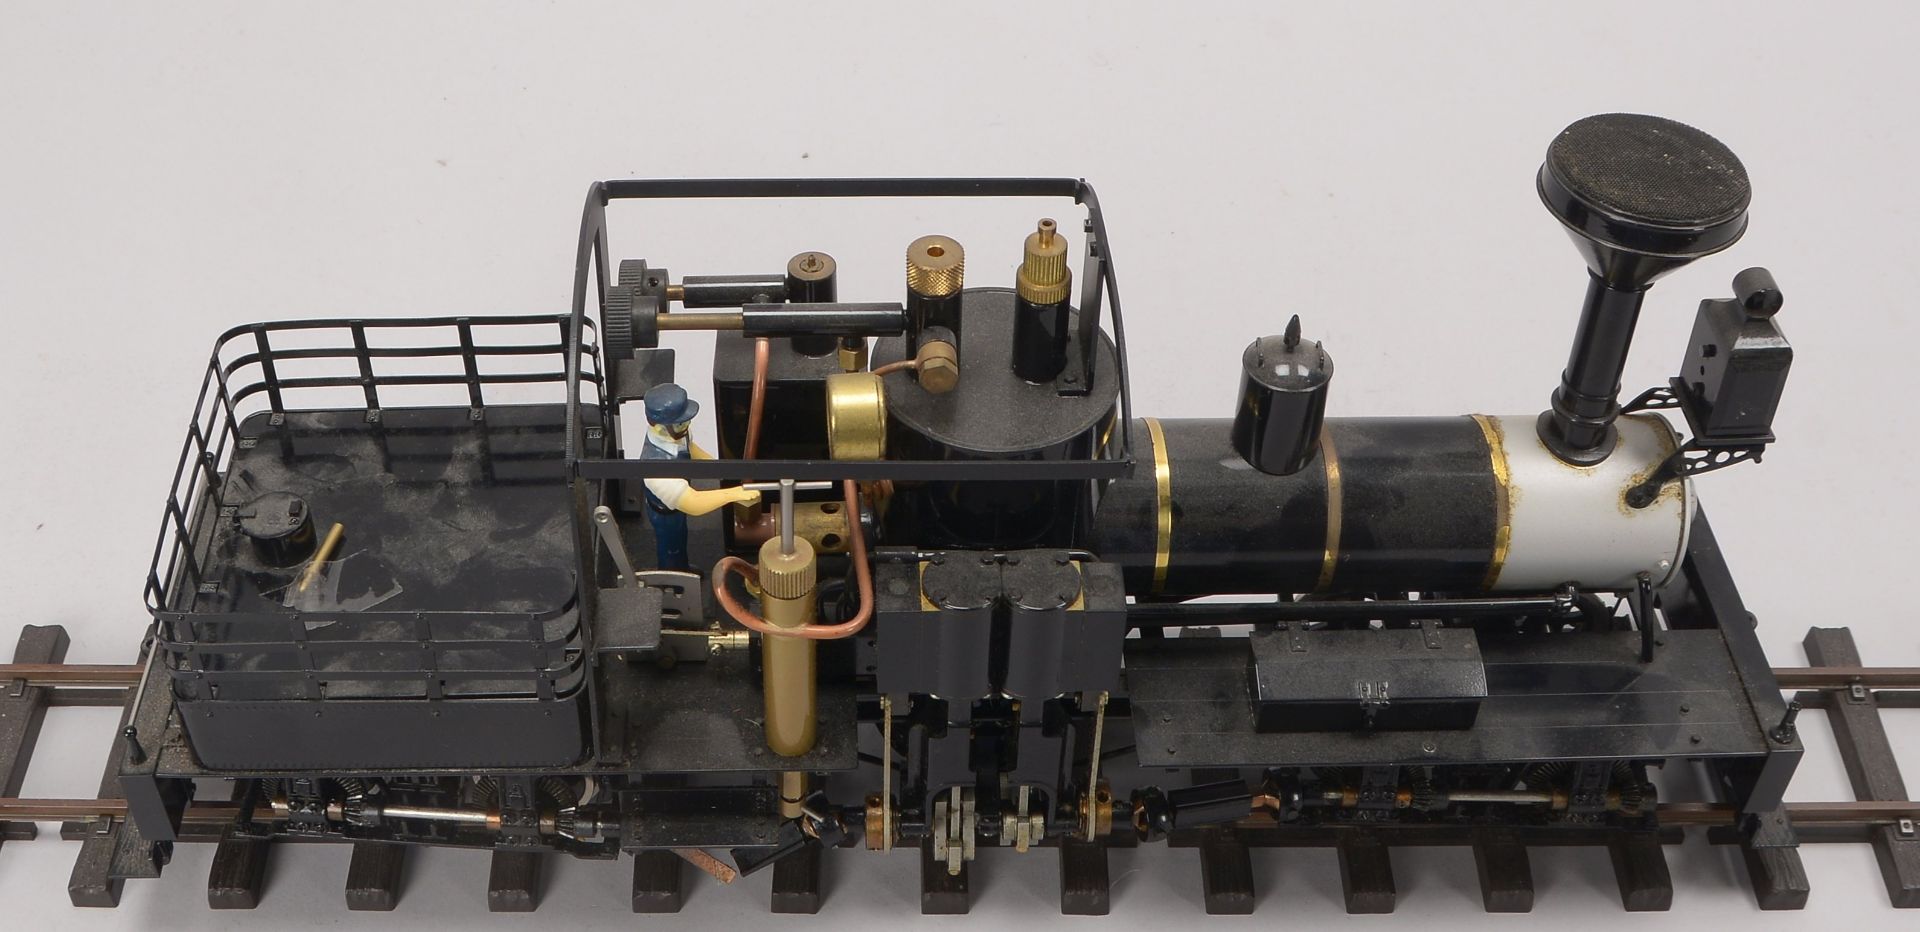 Accucraft Lokomotive m.Tender, Messing / Stahl, Gasantrieb, Livesteam, Spur 45 mm, gebrauchter Zusta - Bild 2 aus 4